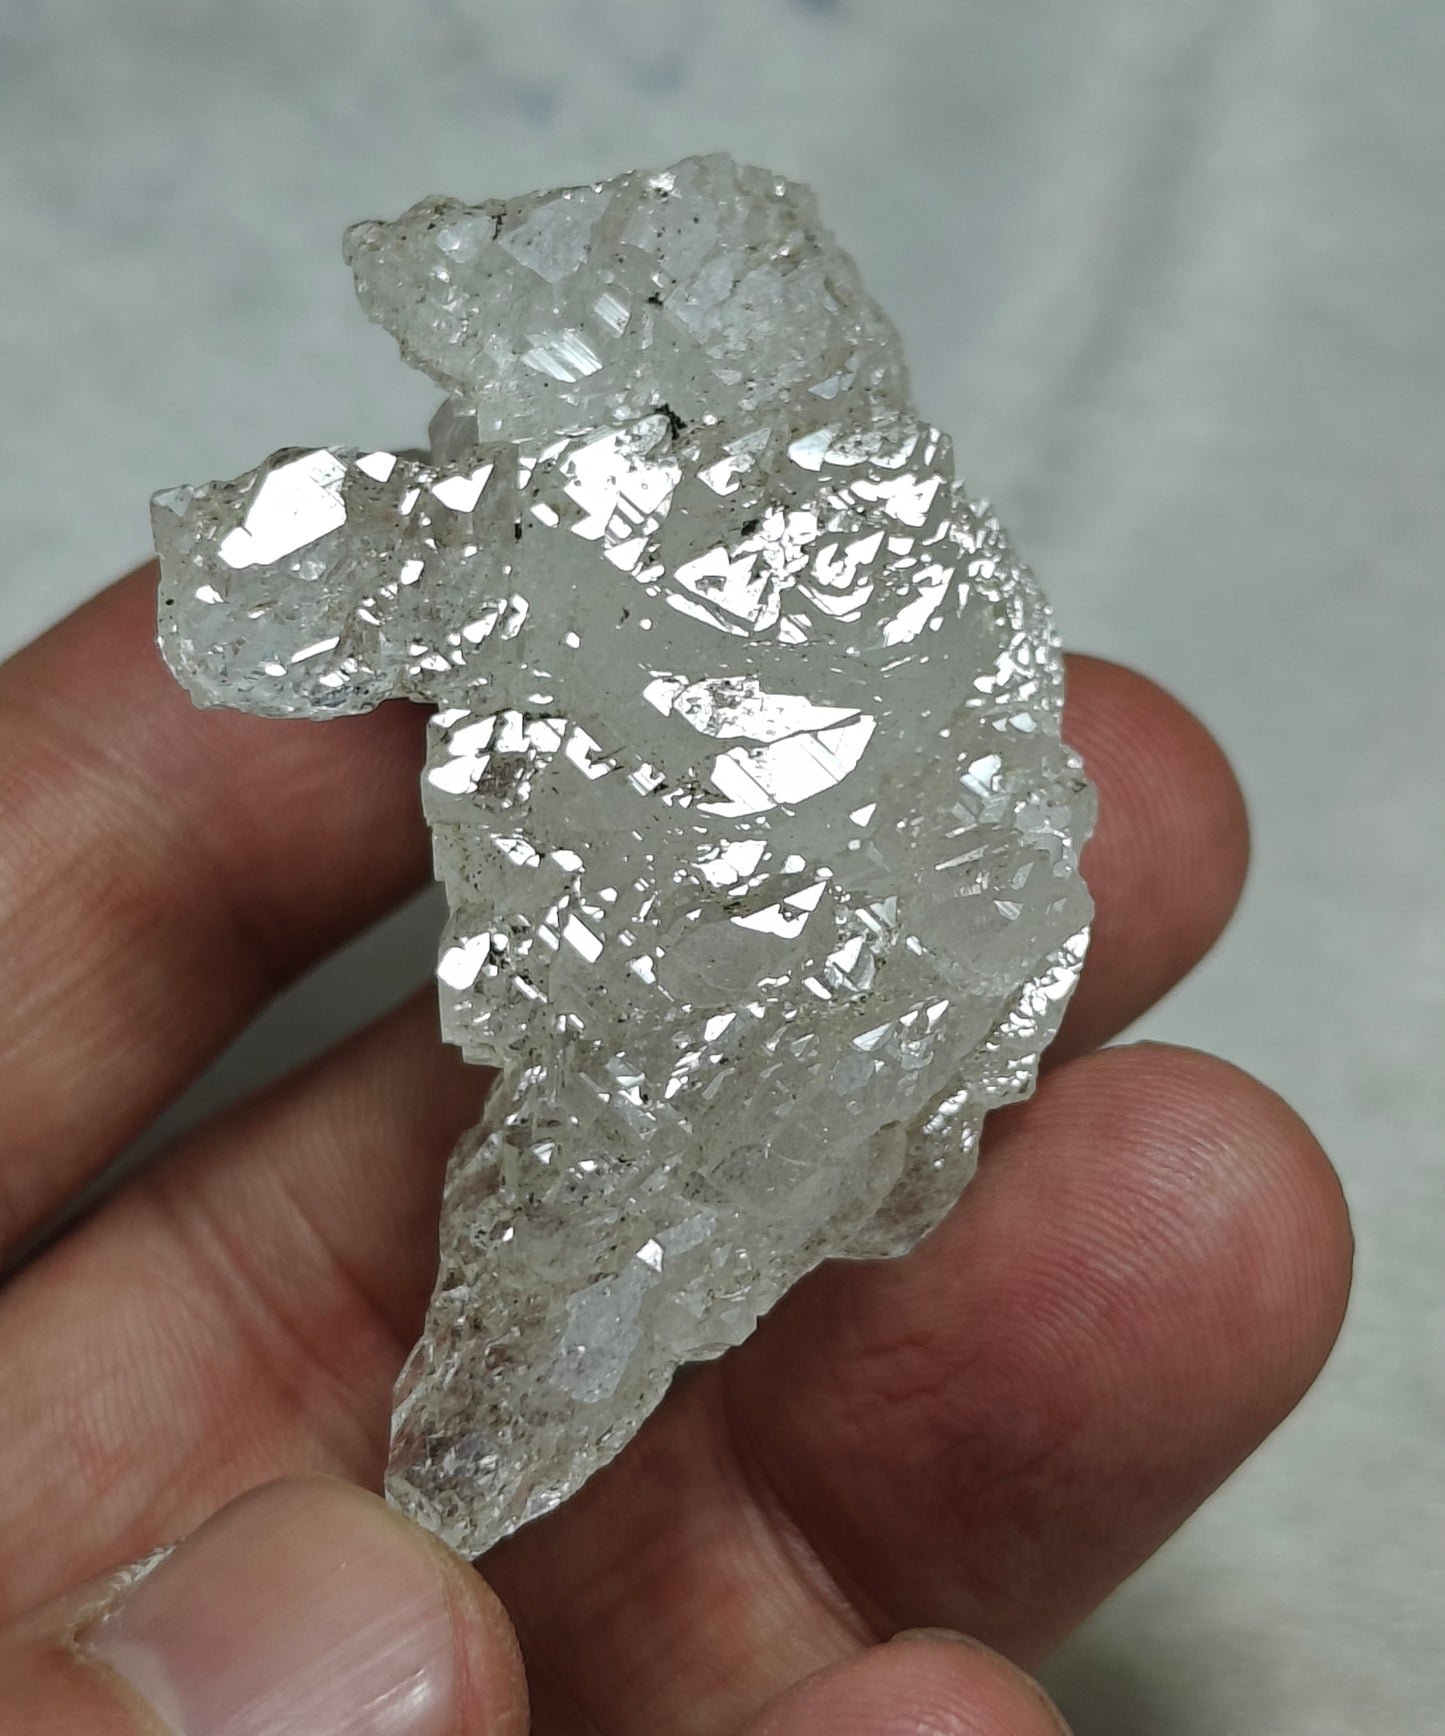 Natural etched quartz crystal floater 41 grams